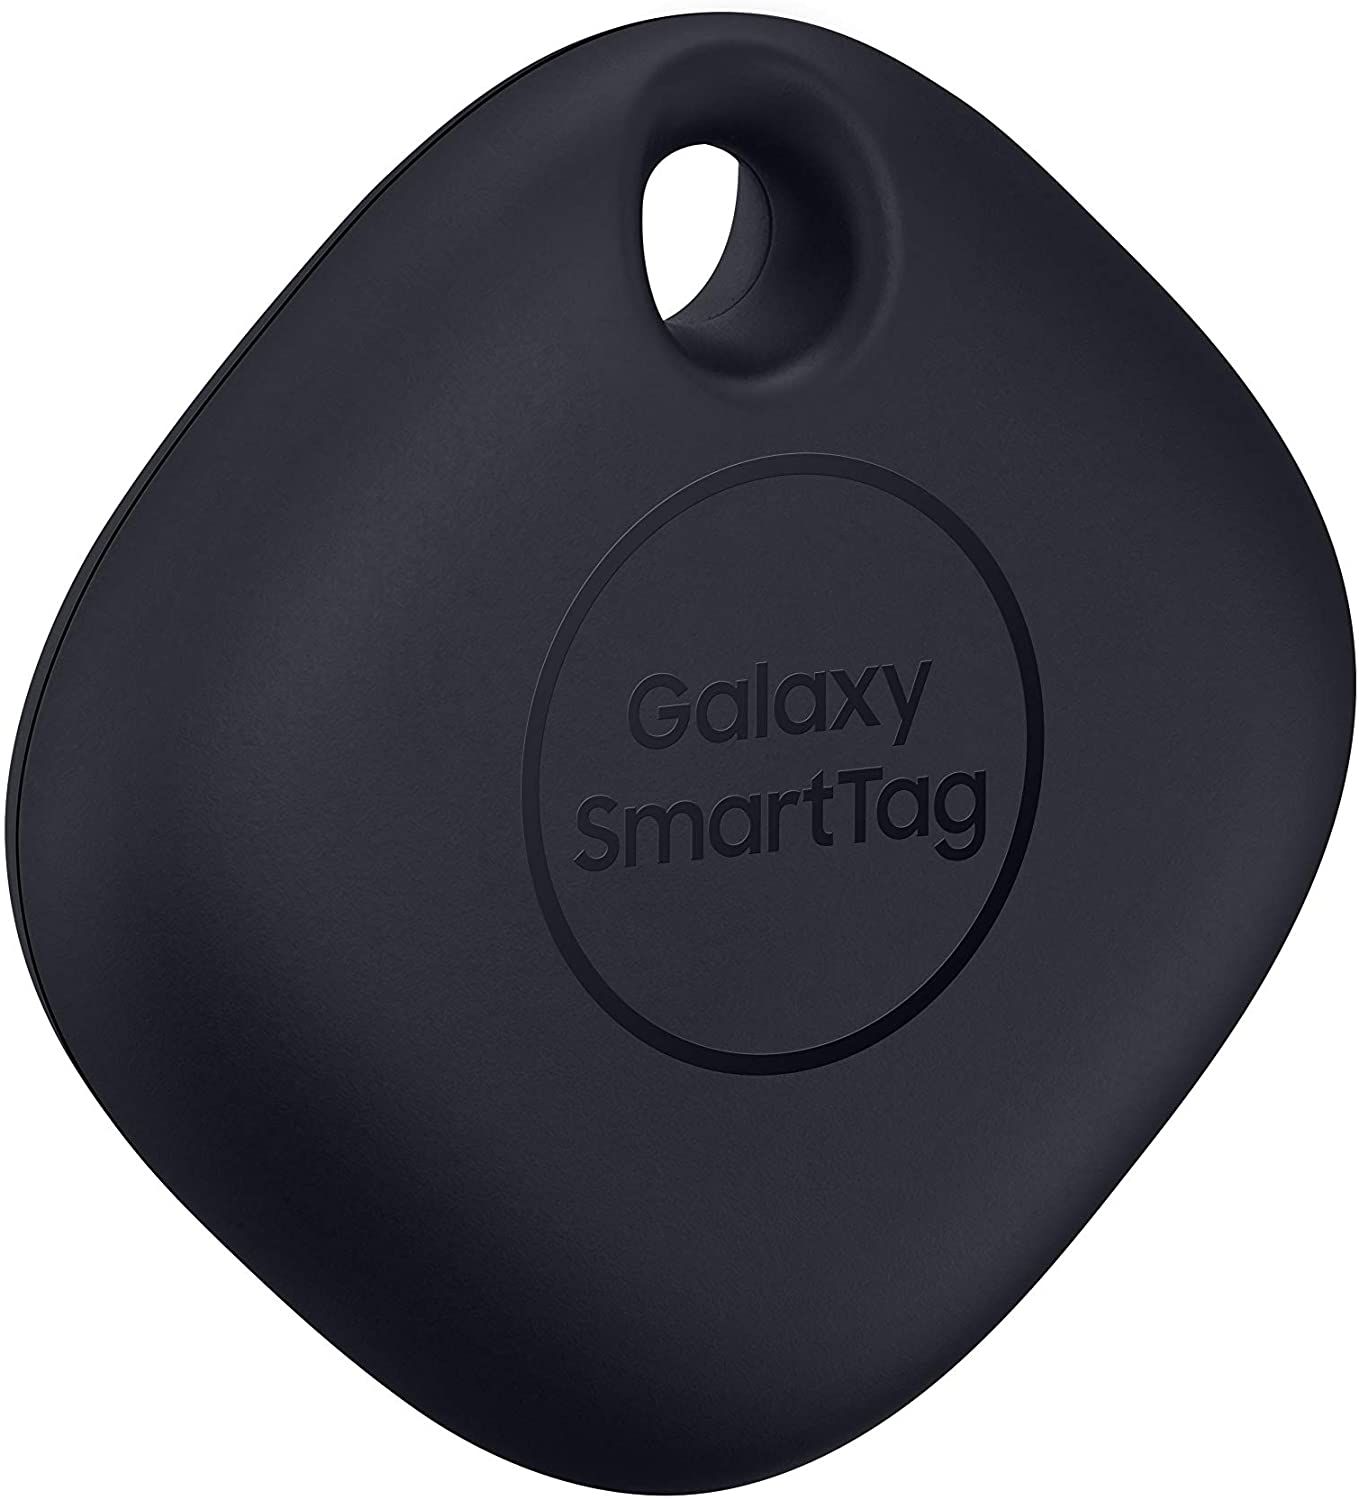 Samsung Galaxy SmartTag Side